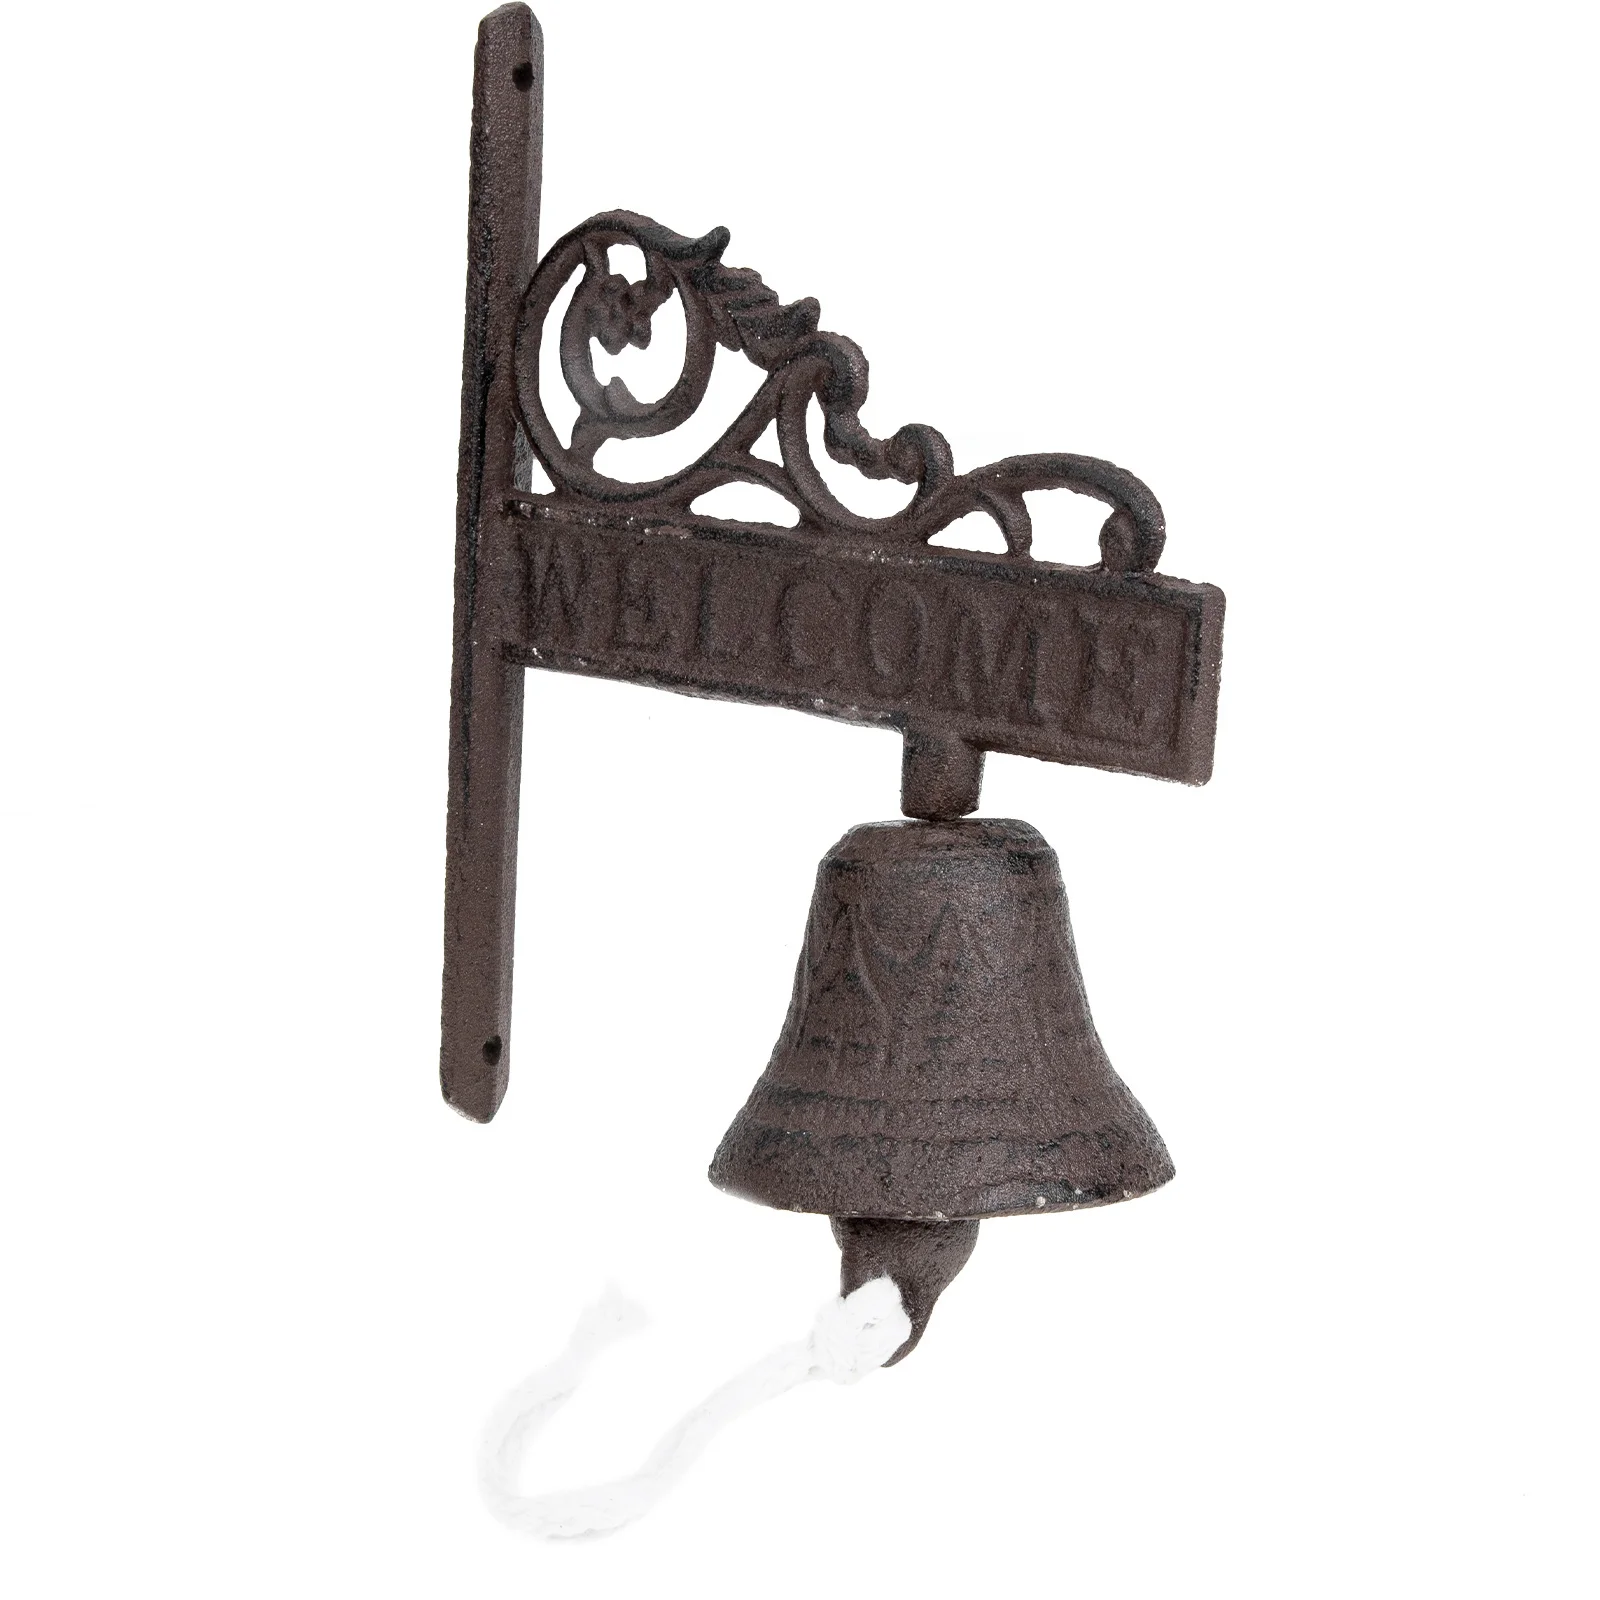 

Bell Door Doorbell Iron Wall Hanging Bells Dinner Vintage Cast Parts Fence Link Chain Shaking Mounted Outdoor Wind